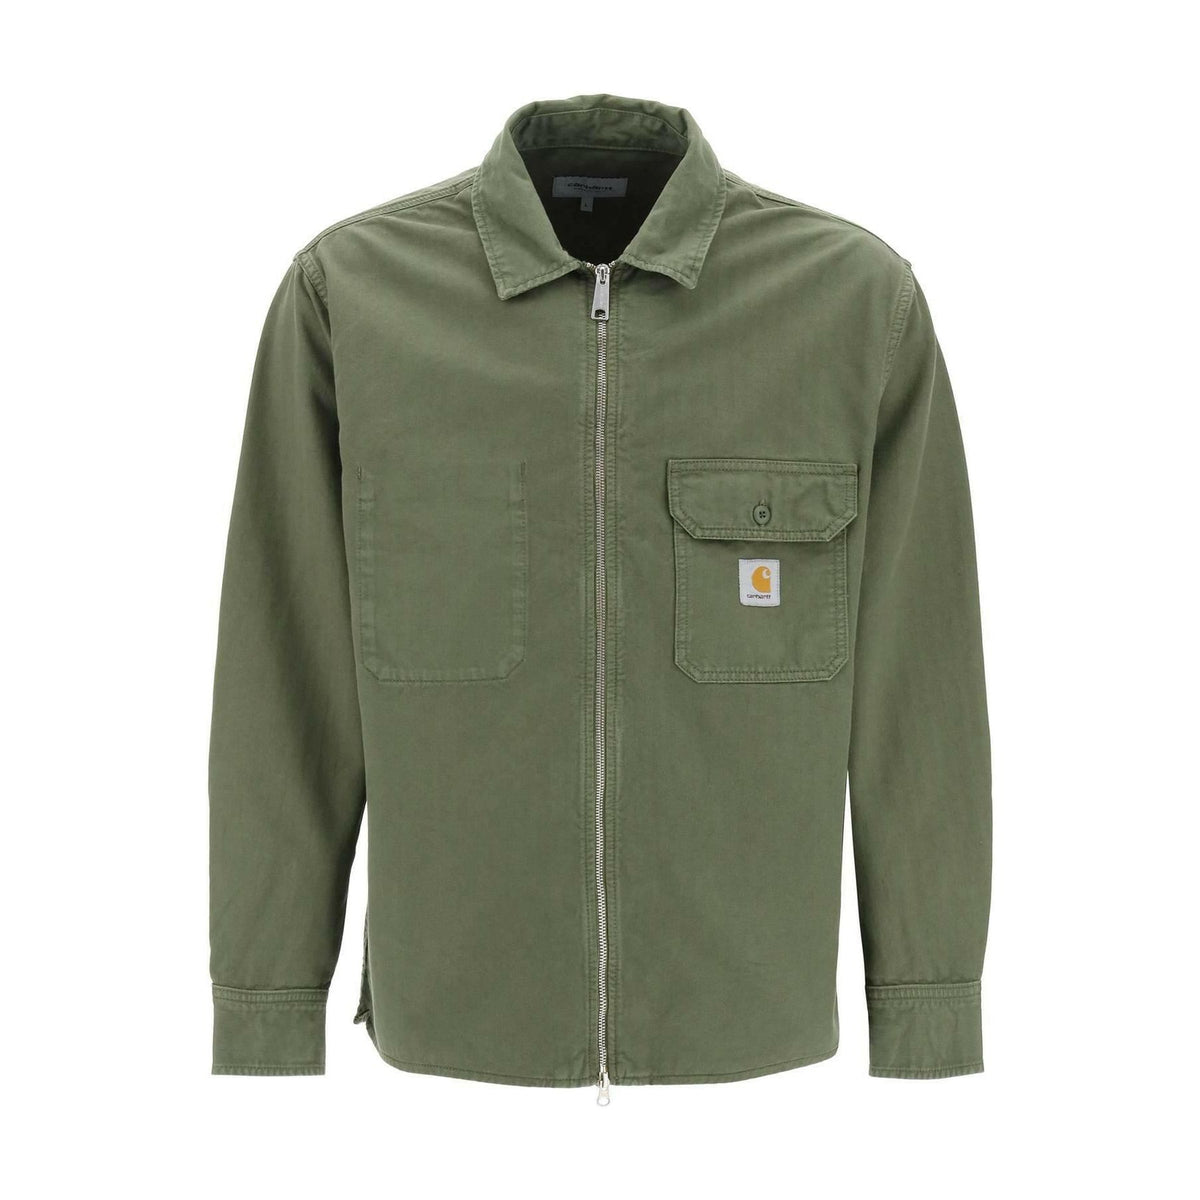 CARHARTT WIP - Dundee Green Rainer Garment-Dyed Shirt Jacket - JOHN JULIA